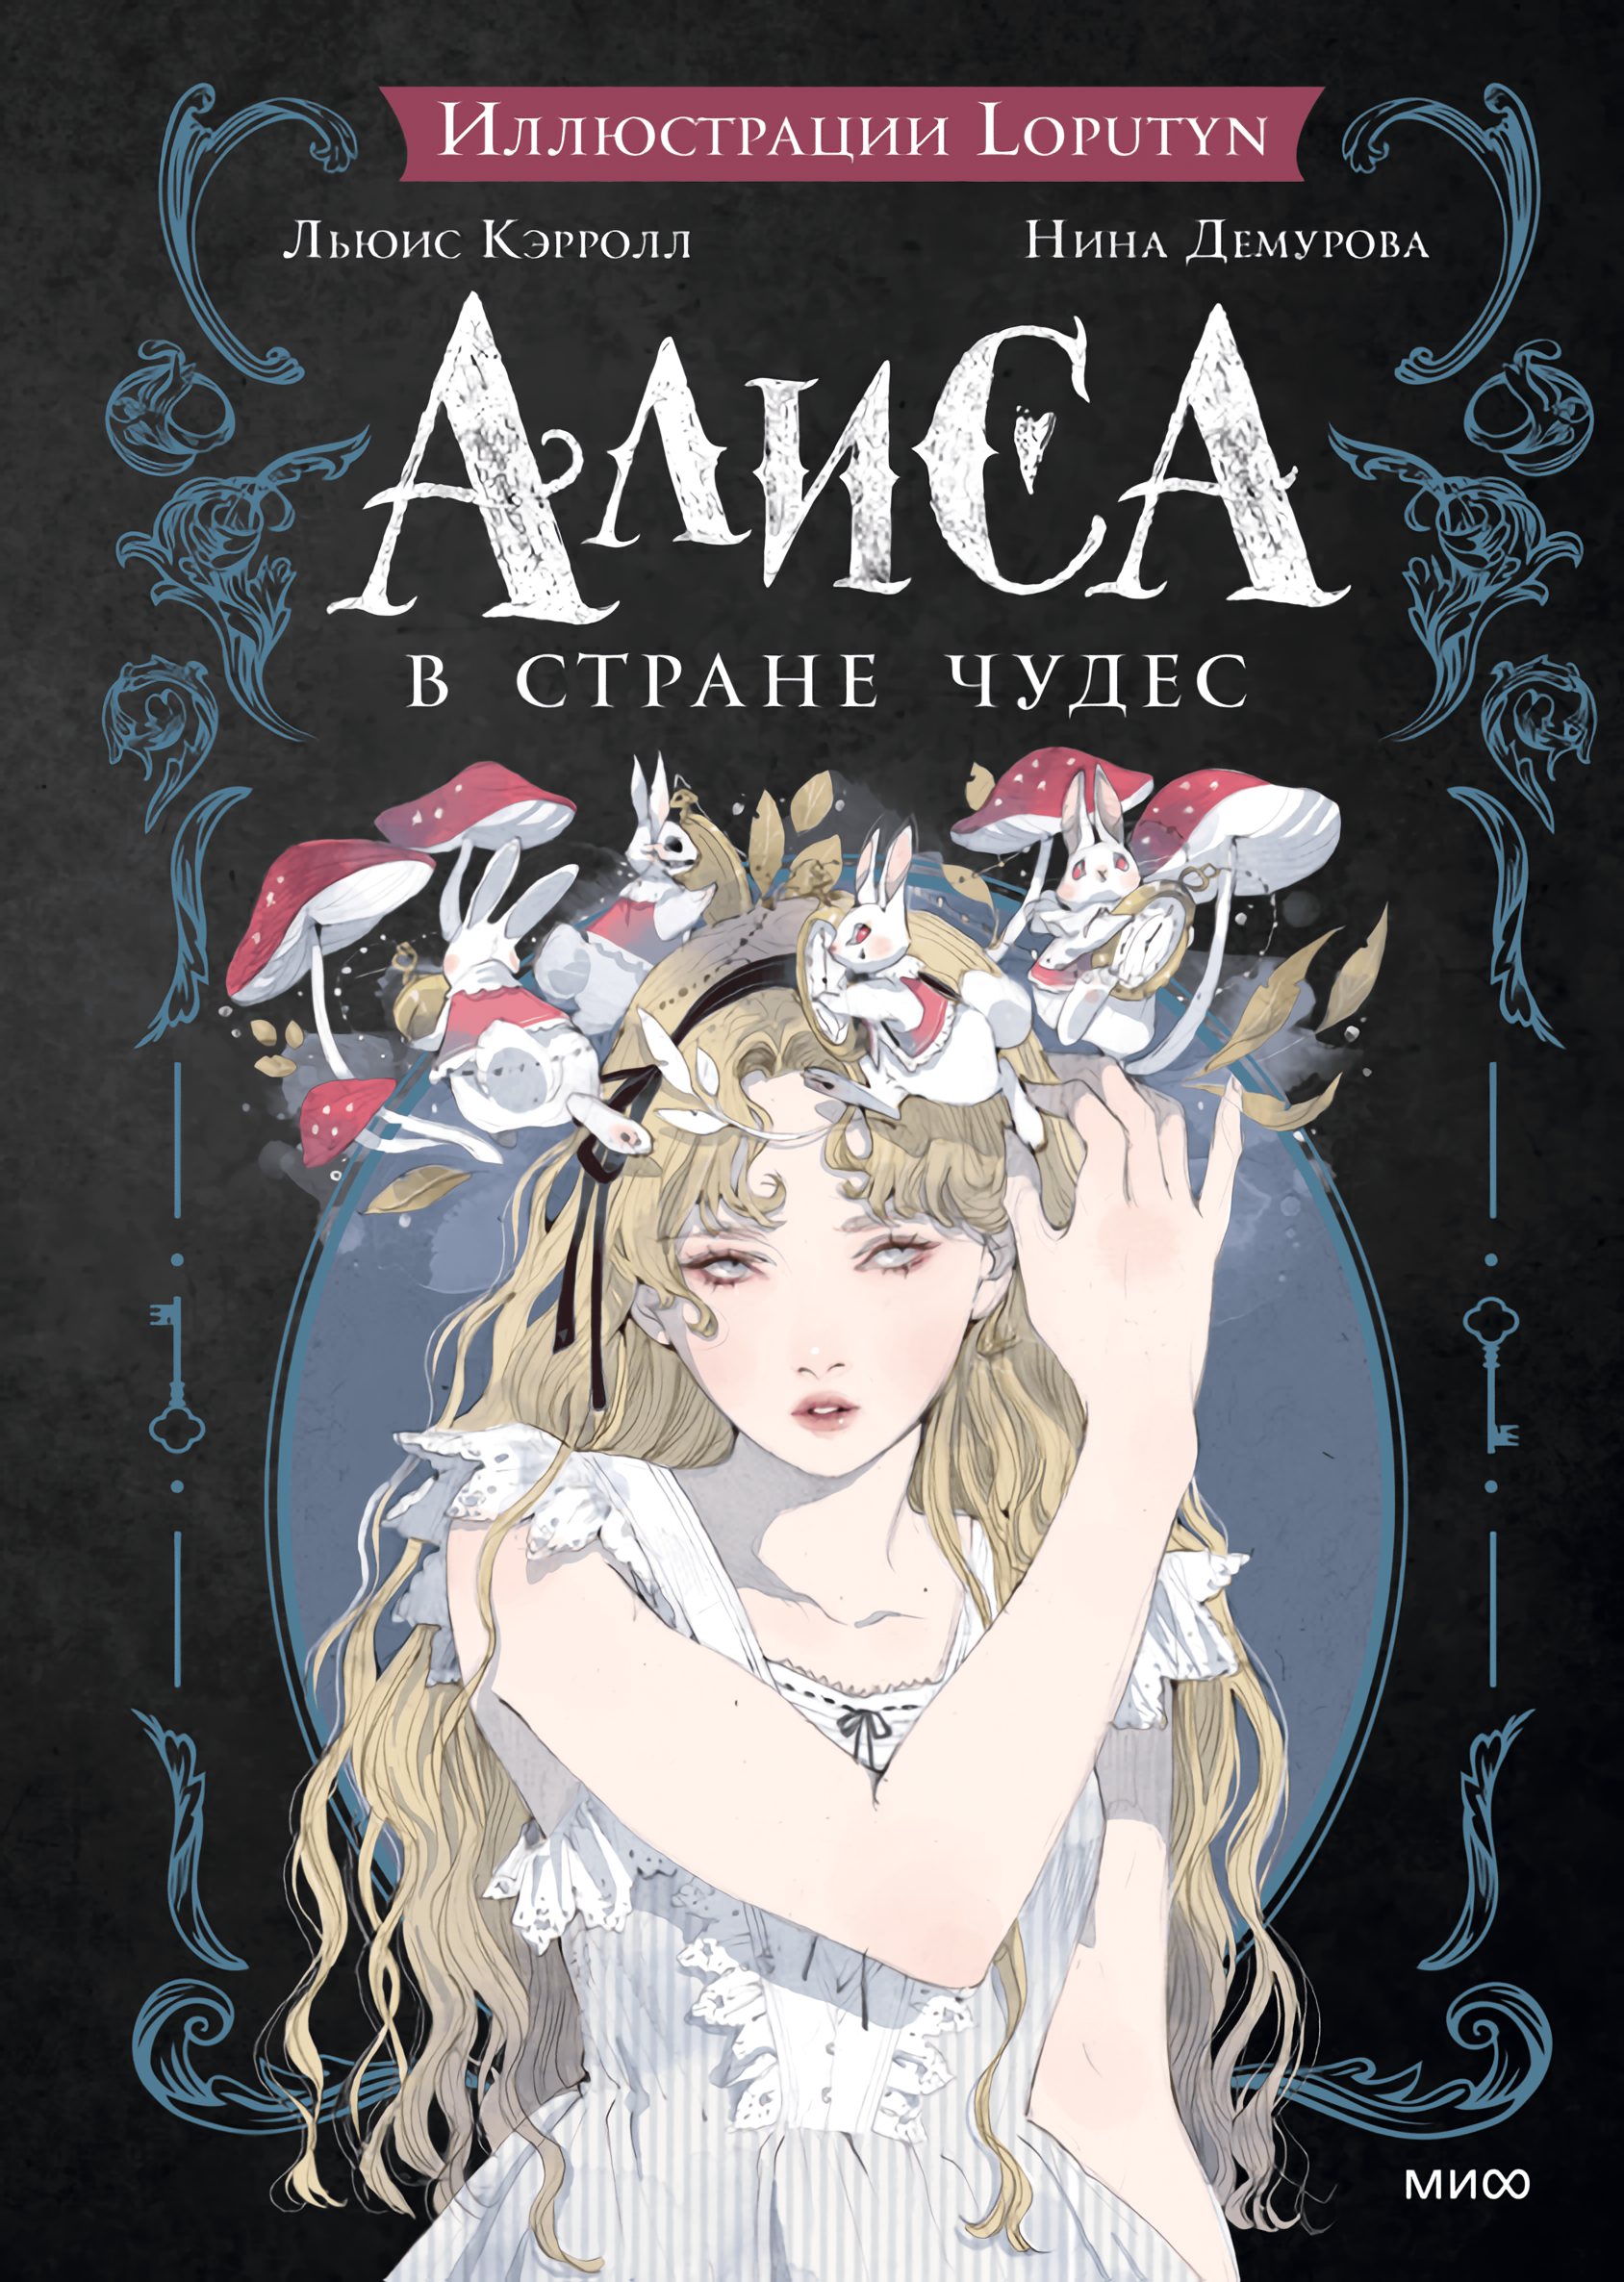 цена Алиса в Стране чудес (иллюстрации Loputyn)